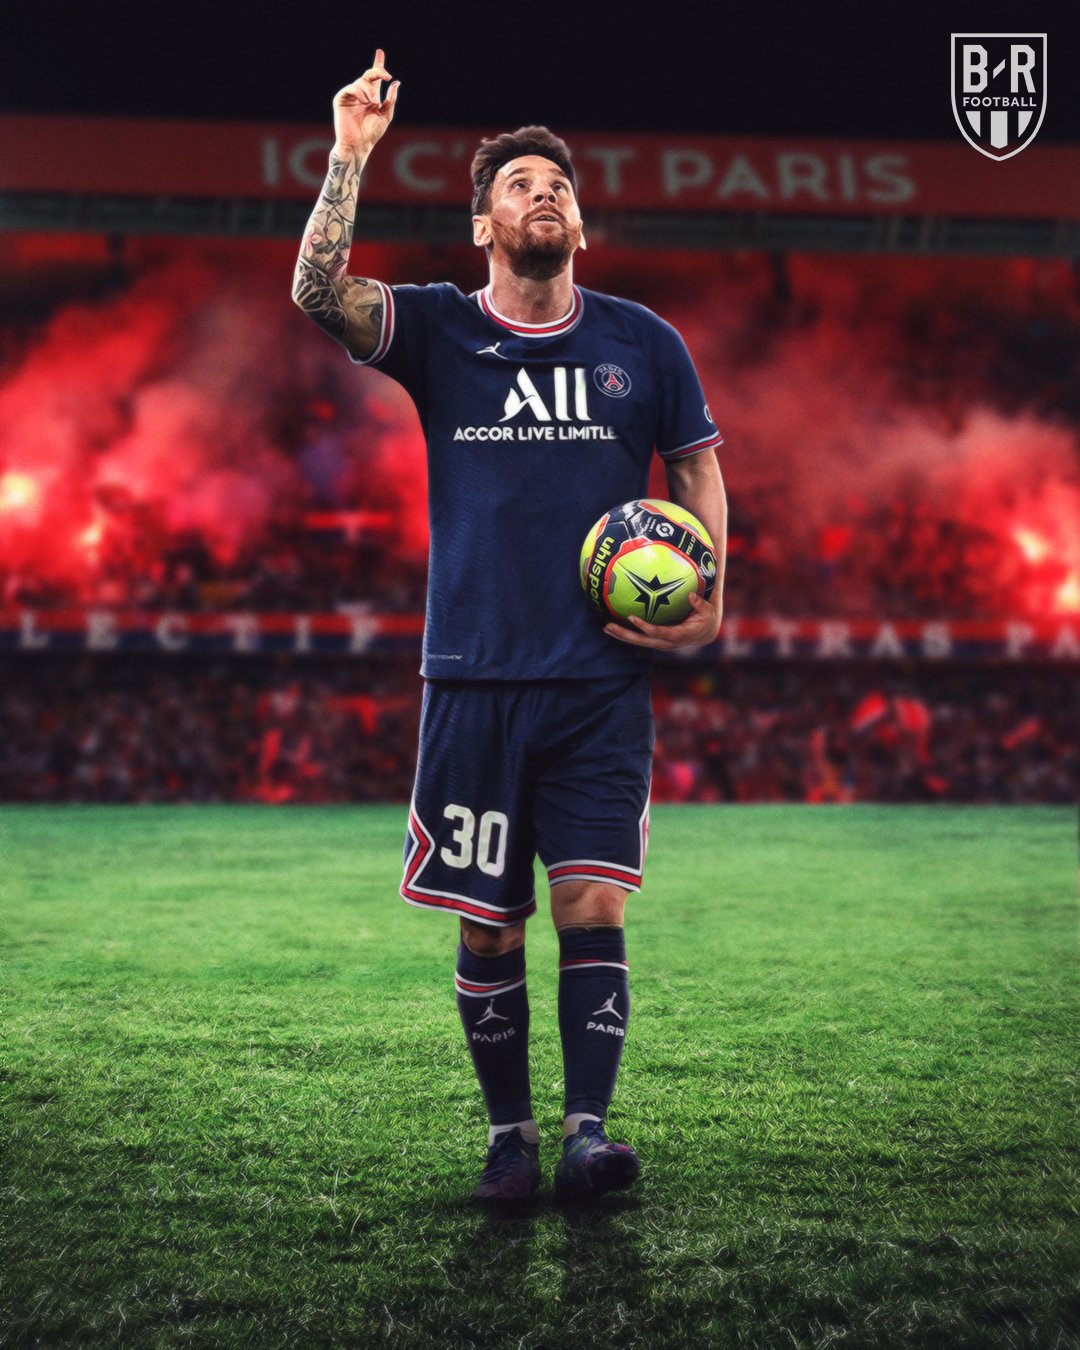 Ligue 1 - giải đấu bóng đá hàng đầu của Pháp - là nơi tập trung của những ngôi sao bóng đá hàng đầu từ khắp nơi trên thế giới. Những trận đấu đầy cảm xúc và kịch tính không bao giờ khiến khán giả thất vọng.